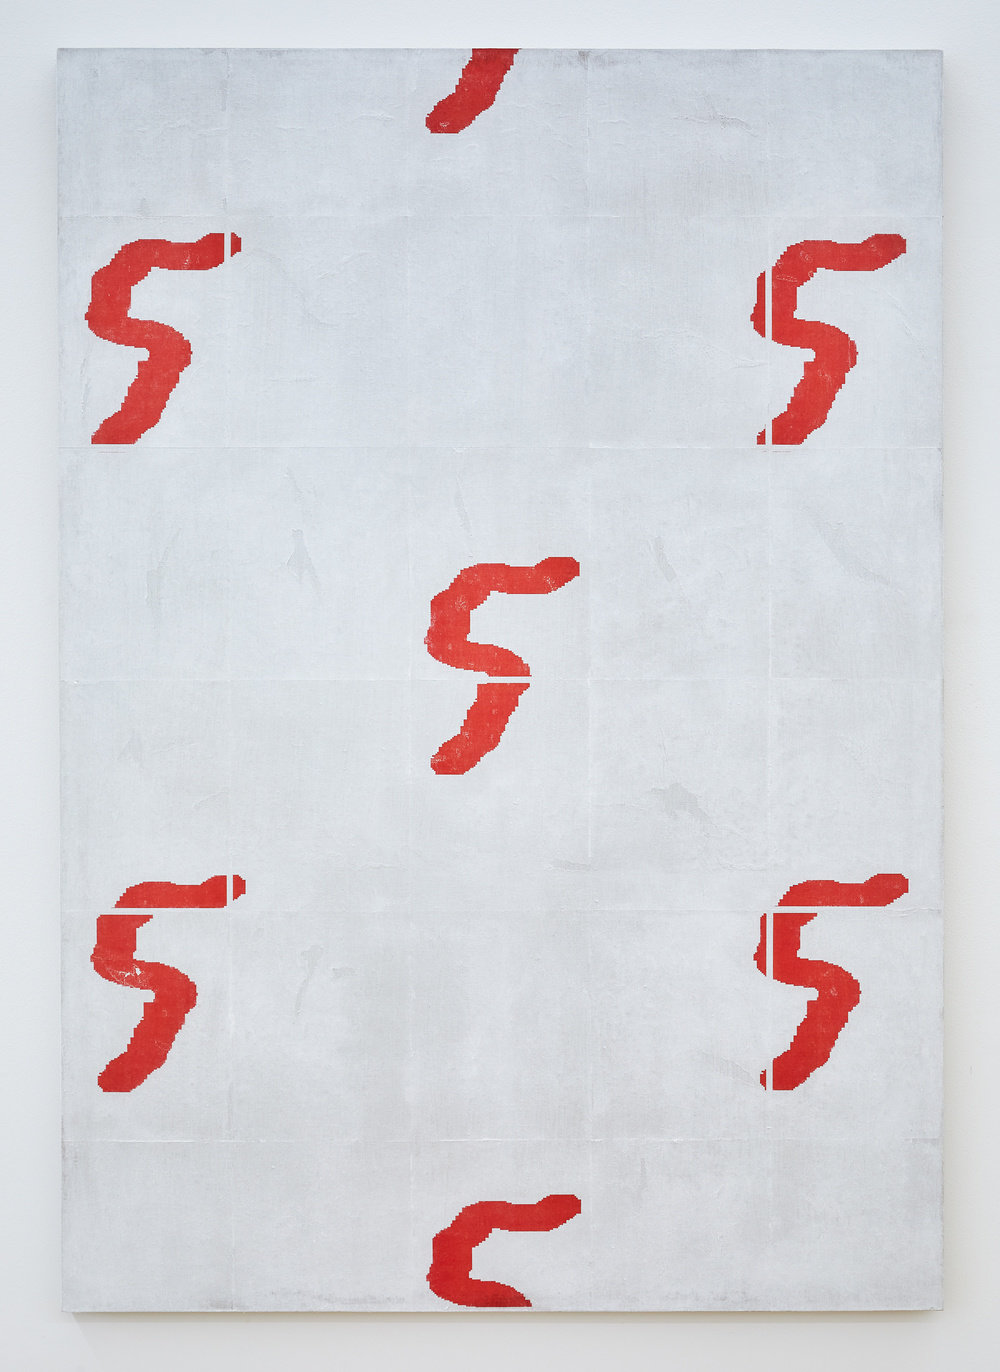 Matt sheridan smith, pattern portrait (cyclist), 2014, acrylic, gel transfer, paper, gesso on linen, 60 x 42 in., 152.4 x 106.68 cm